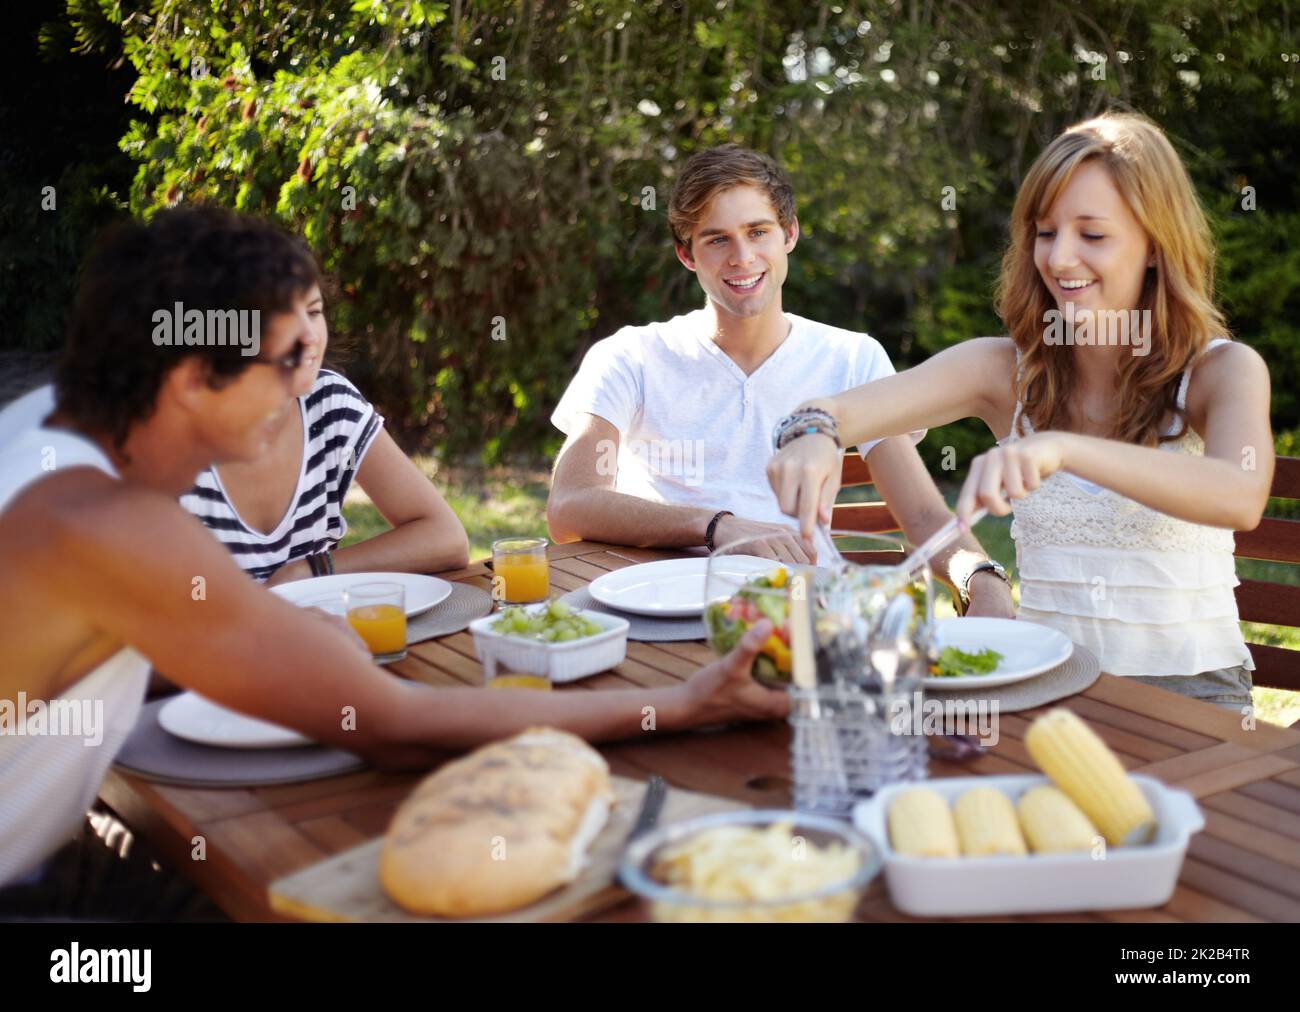 Un po' di sana bontà. Sorridendo i giovani a pranzo con un gruppo di amici - ritratto. Foto Stock